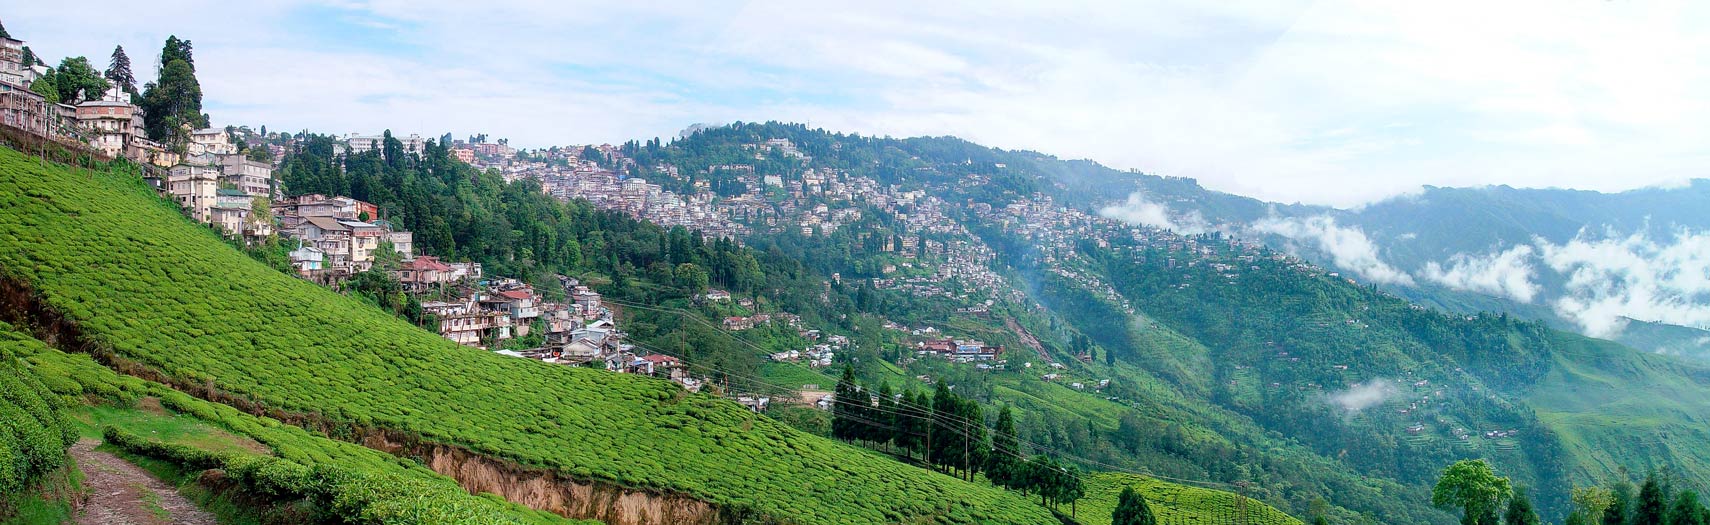 Happy Valley Tea Estate,  Darjeeling, West Bengal, India